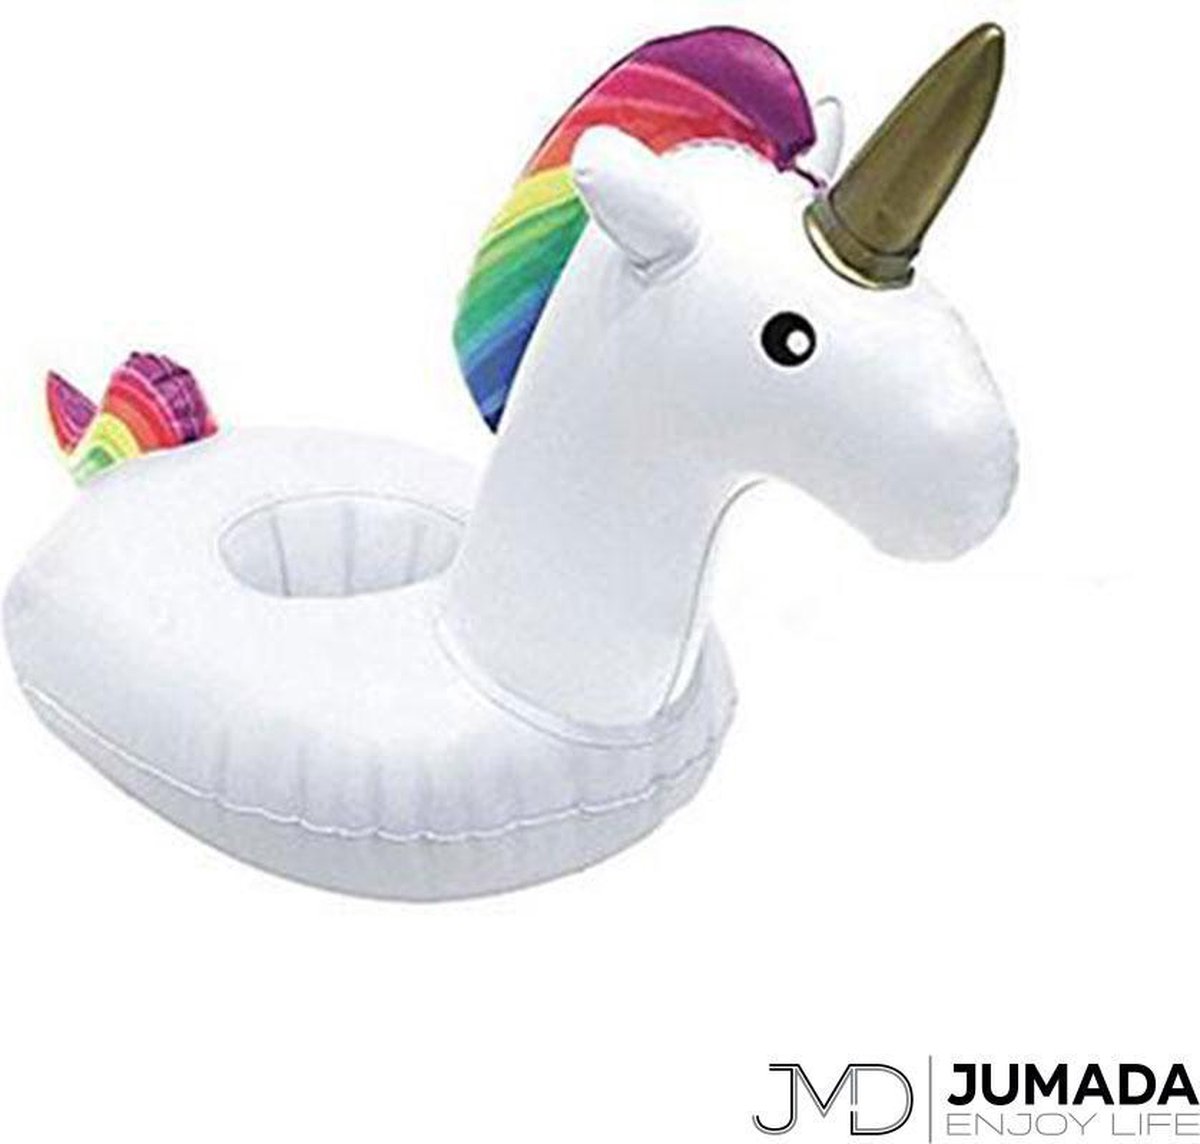 Jumada's Opblaasbare Bekerhouder Eenhoorn - Voor Bekers / Blikken / Flessen - Opblaas Drankhouder - Zwembadaccessoire - Opblaasfiguur - Unicorn - Wit